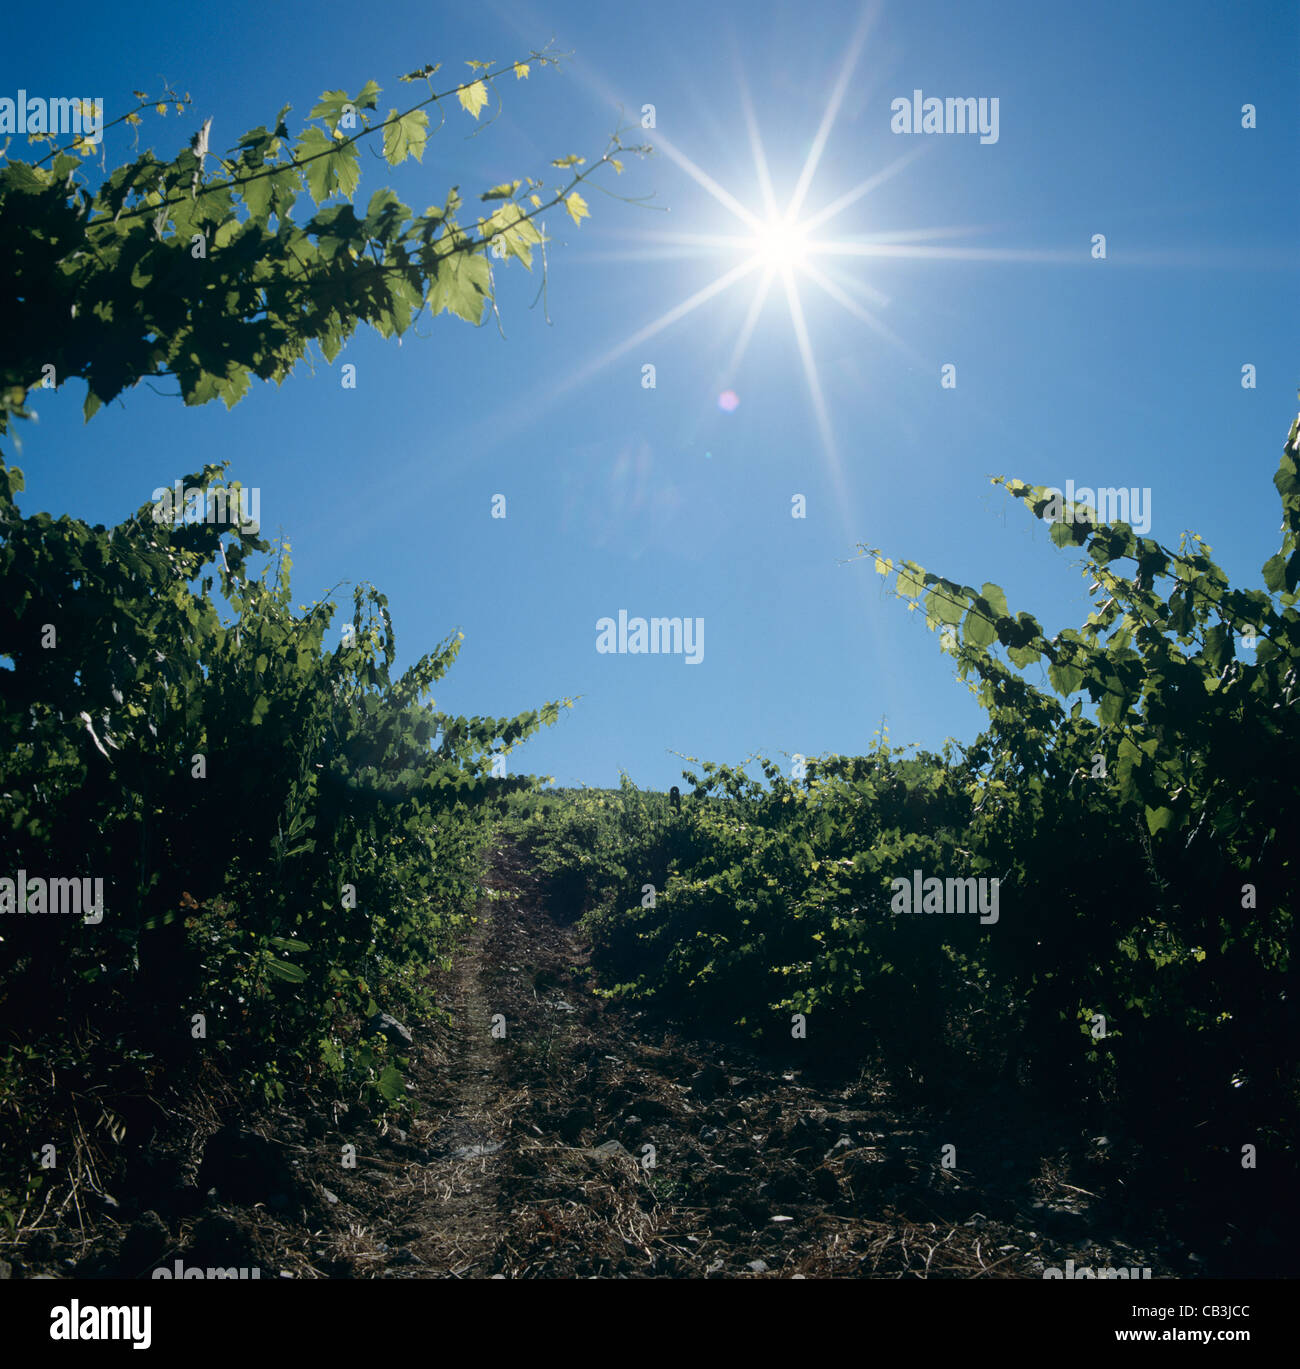 Esaminando il Rising Sun in un vigneto Chianti vicino a Siena, Toscana, Italia Foto Stock